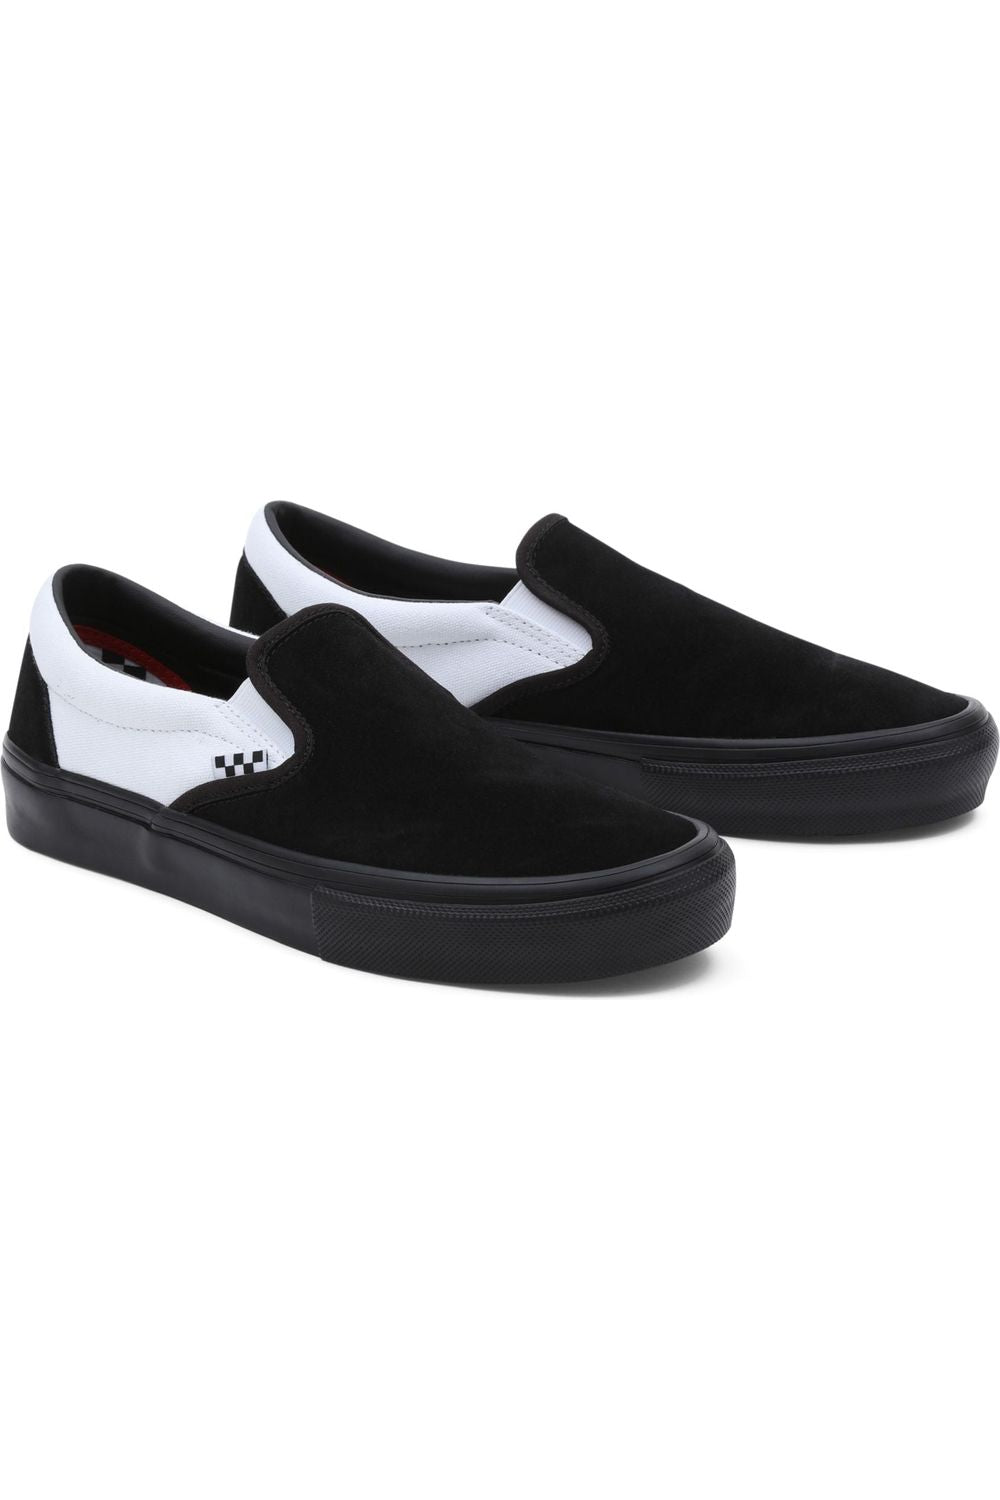 Vans MN Skate Slip-On Black Black White